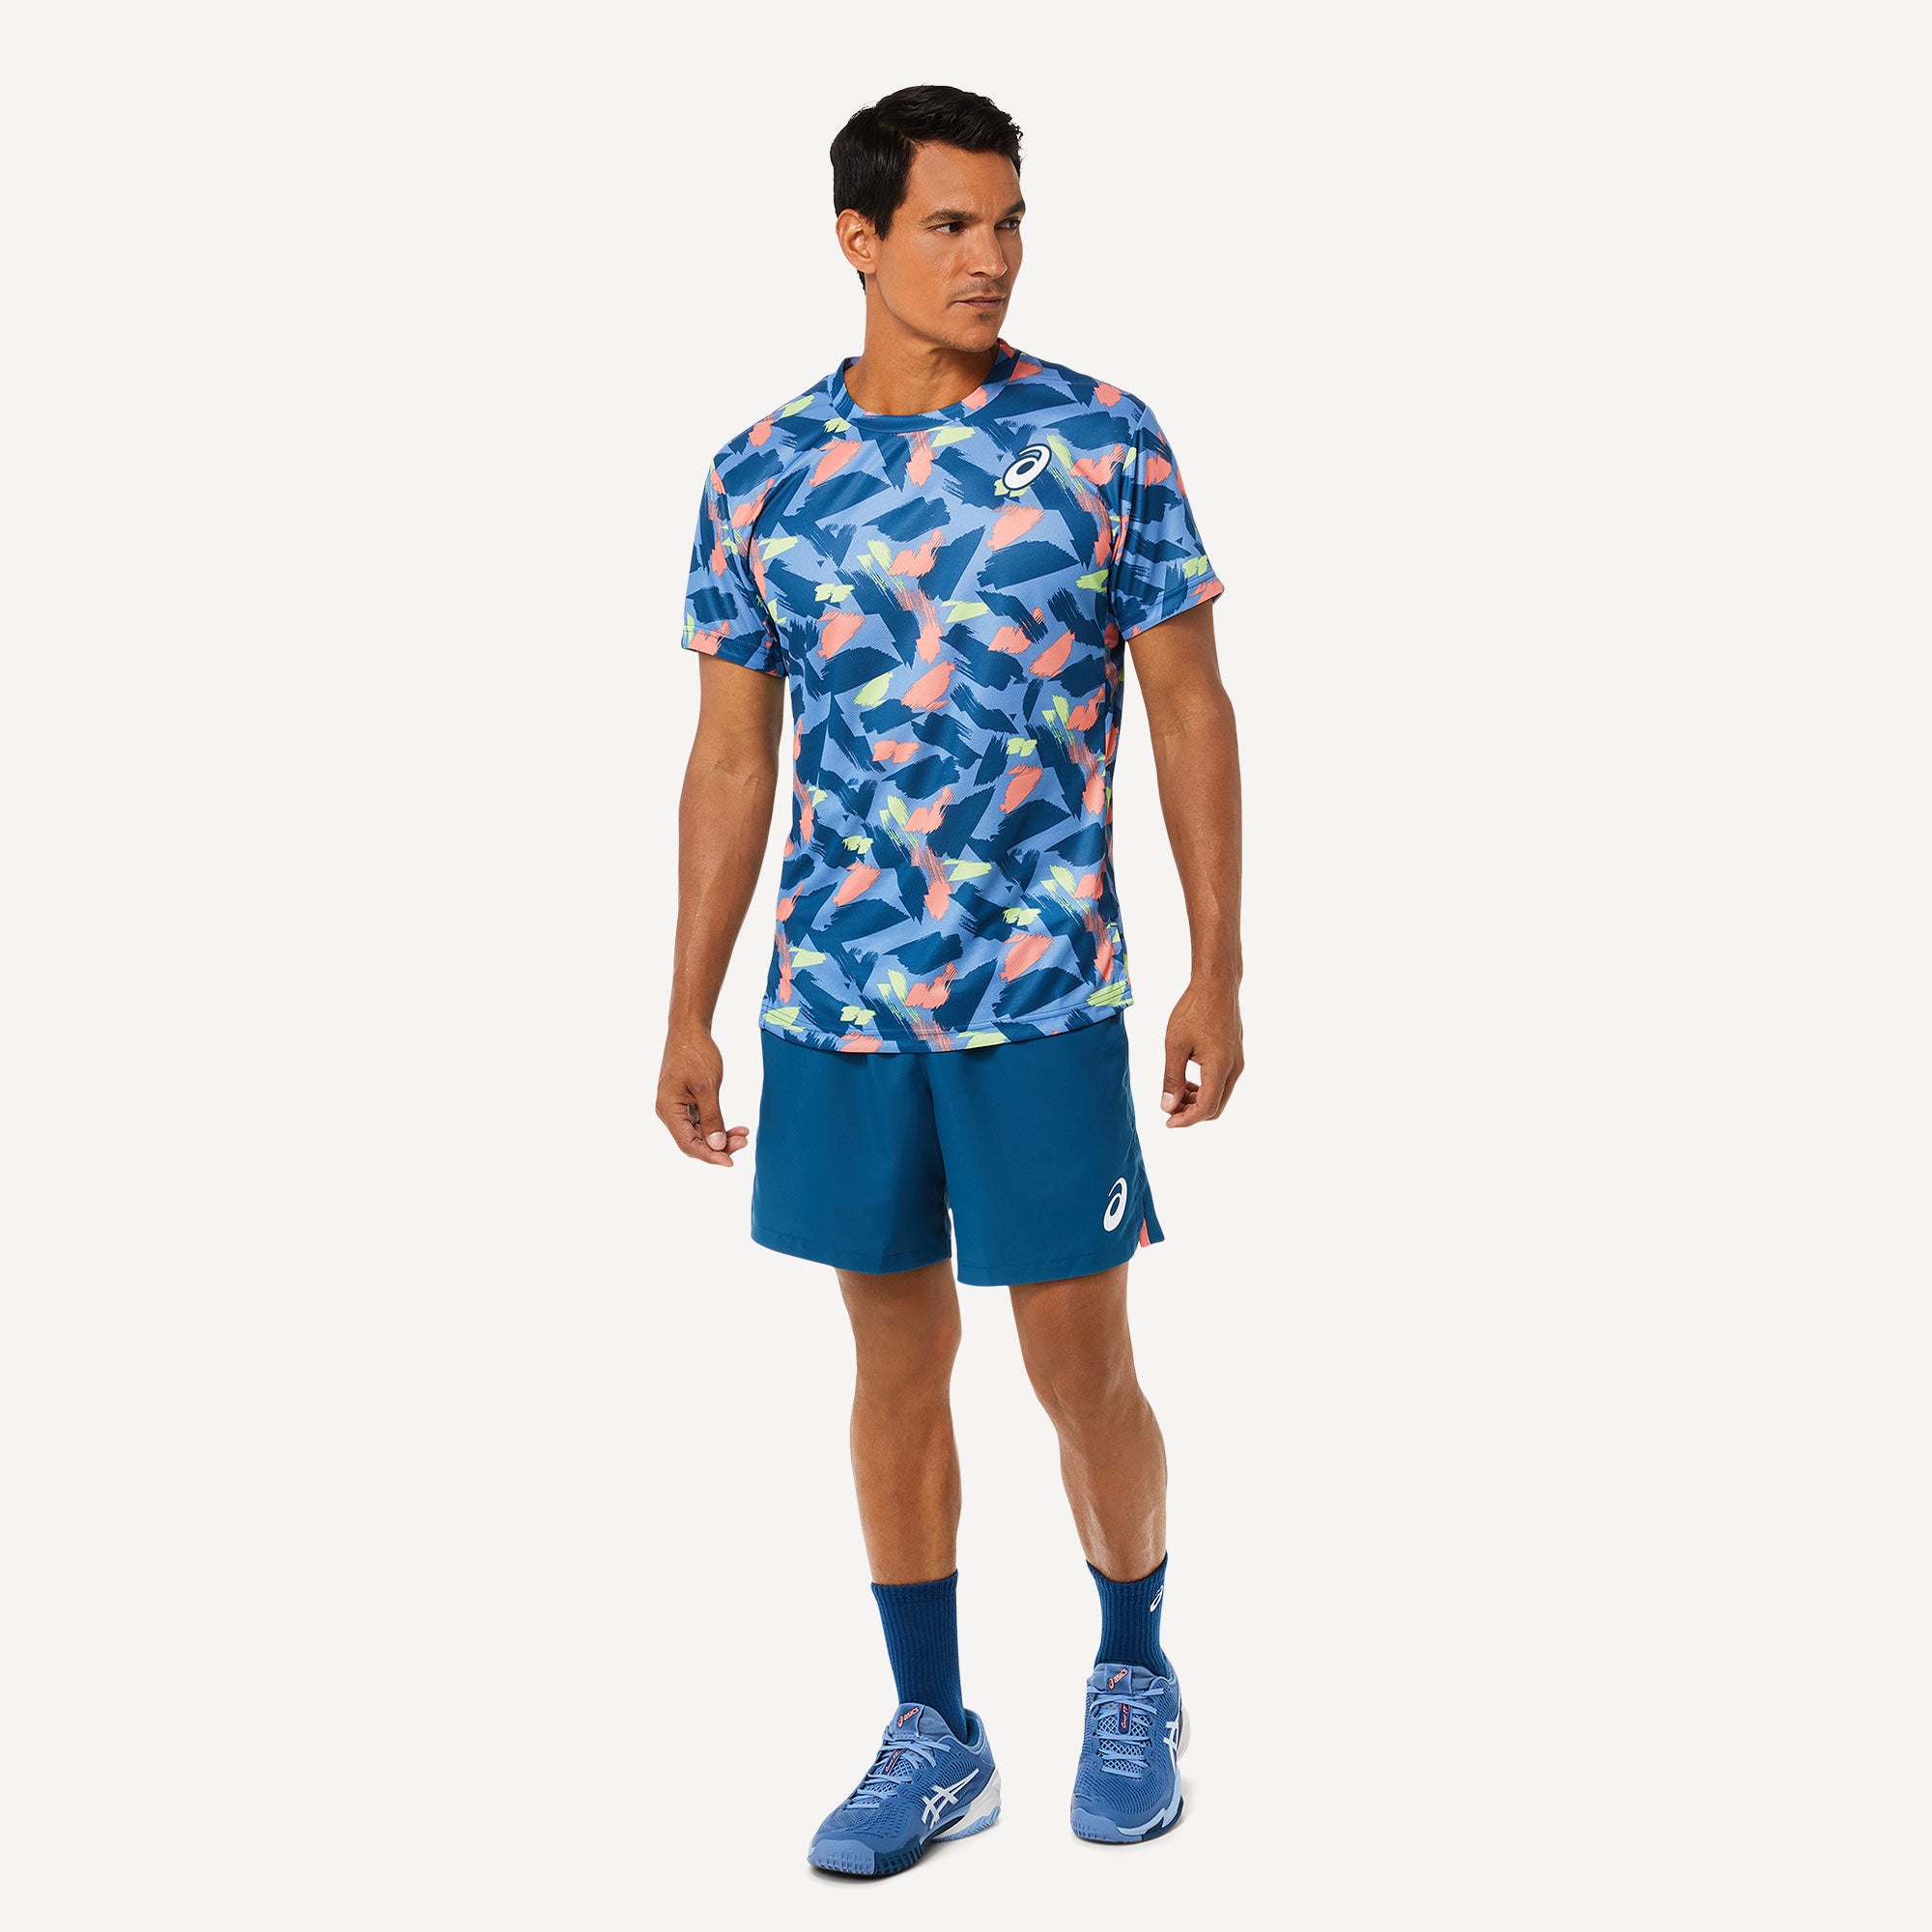 ASICS Match Men's Graphic Tennis Shirt Blue (5)